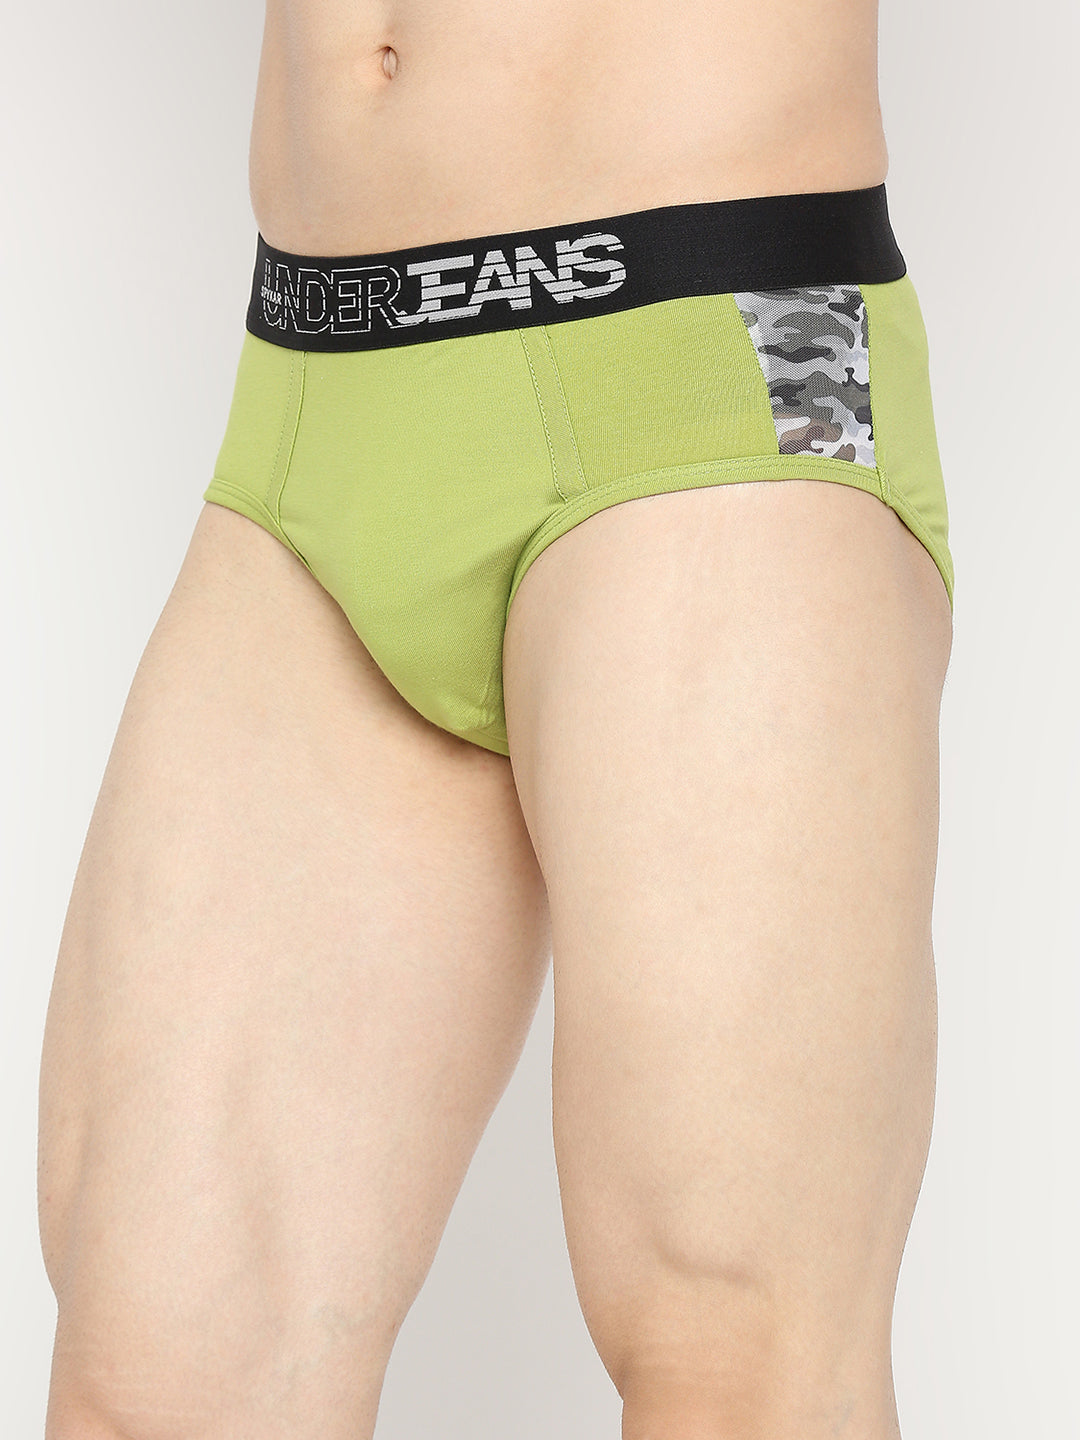 Men Premium Bright Green Cotton Blend Brief - UnderJeans by Spykar